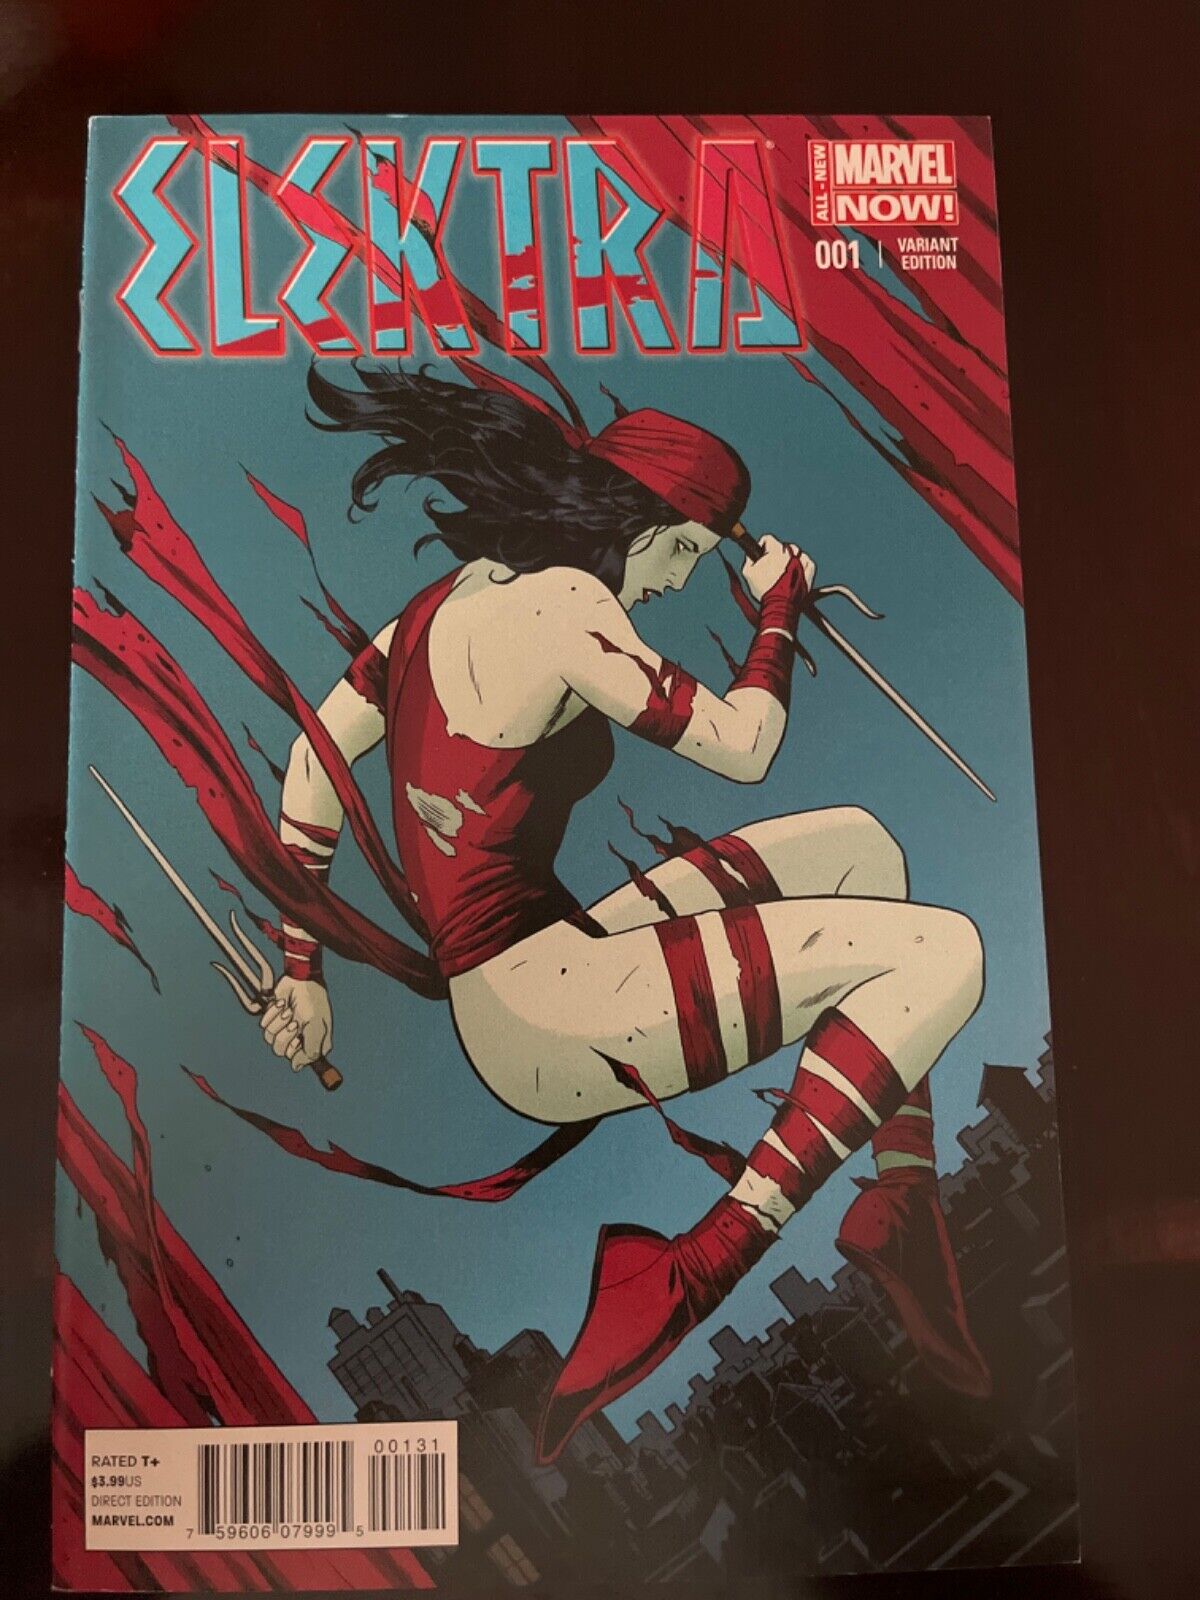 Elektra #1 Vol. 3 (Marvel, 2014) Paolo Rivera Variant Limited 1:50, VF